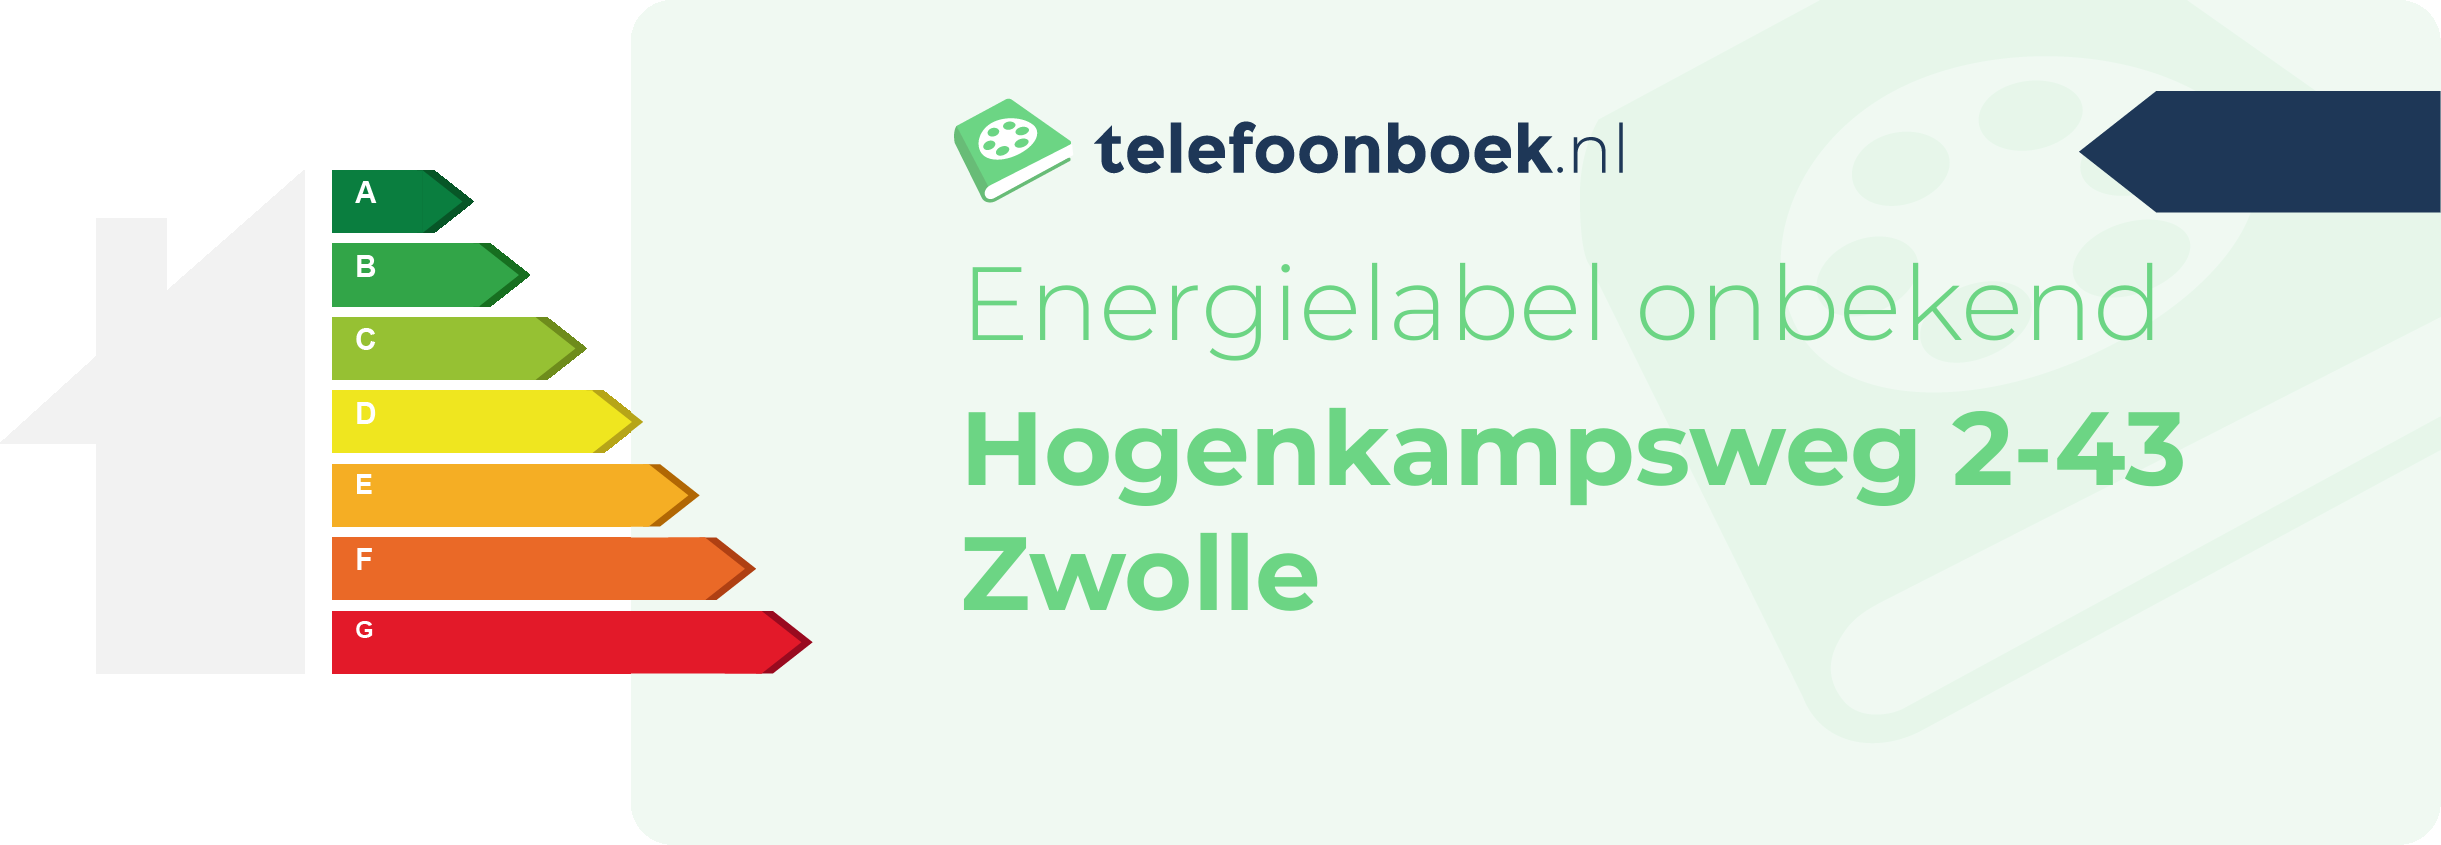 Energielabel Hogenkampsweg 2-43 Zwolle